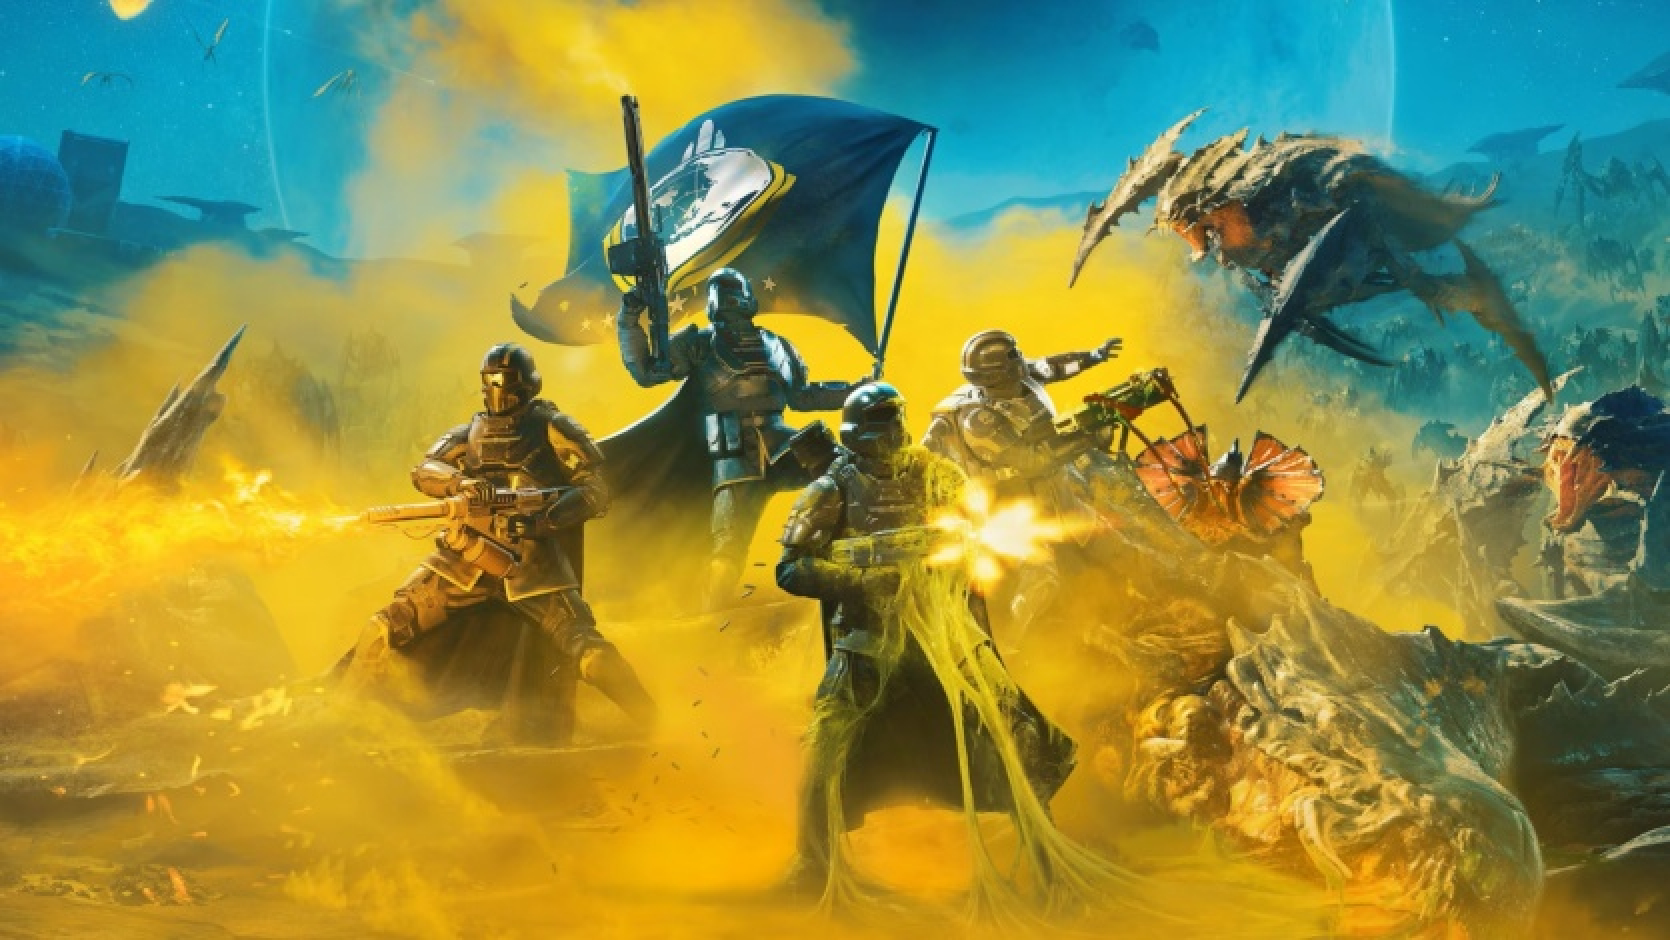 Spēle Helldivers 2 pārspēj God of War Ragnarok un kļūst par visu laiku visātrāk pārdoto PlayStation spēli (12 miljoni kopiju 12 nedēļu laikā).